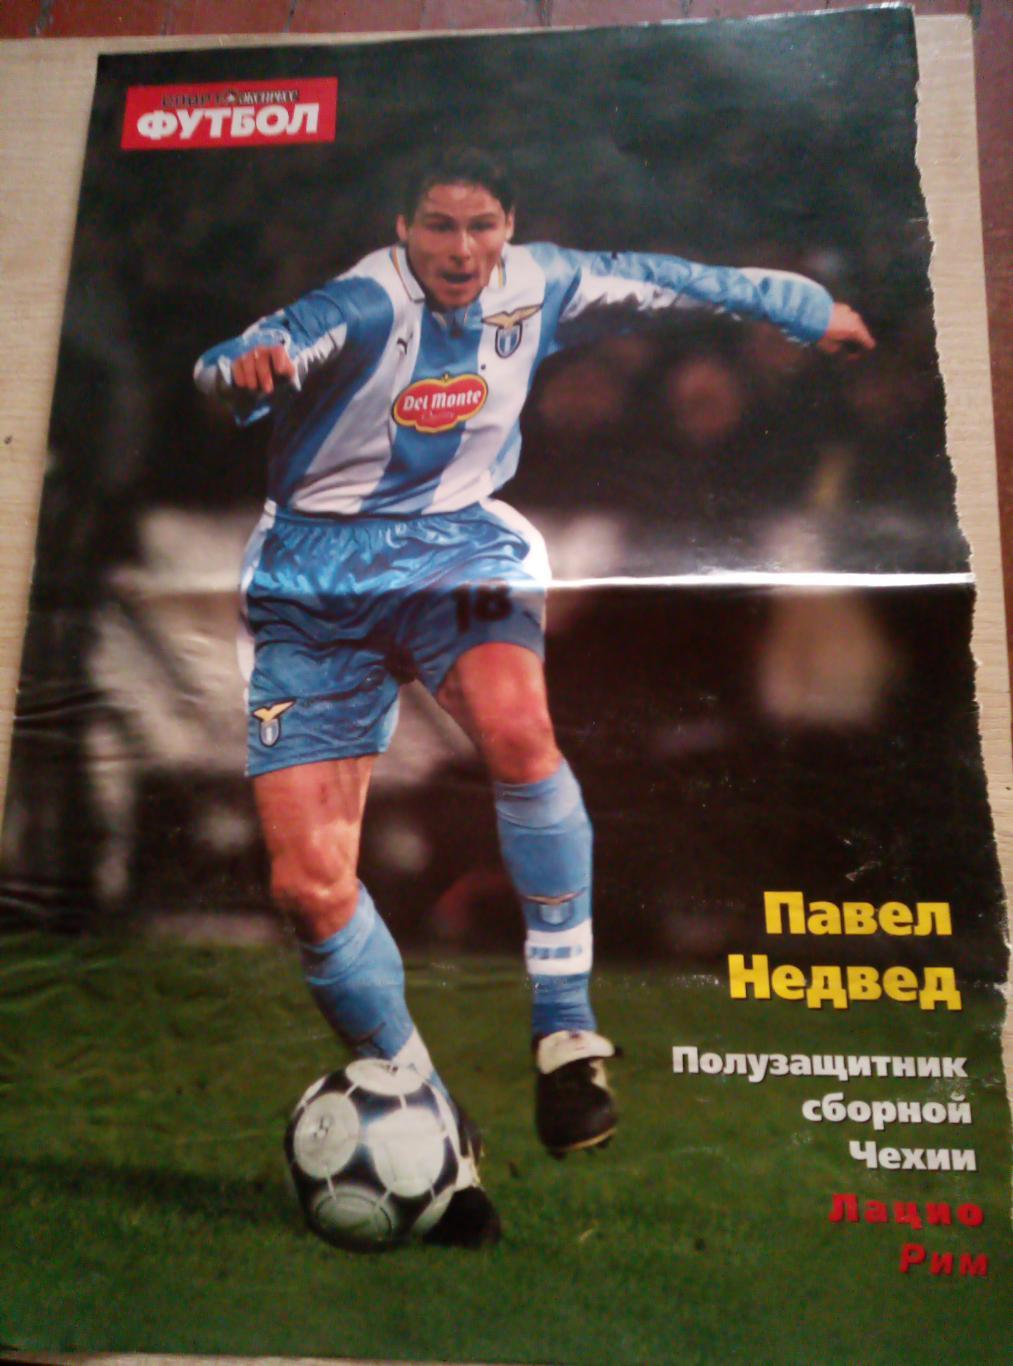 Постер Павел Недвед, Чехия (Спорт Экспресс)